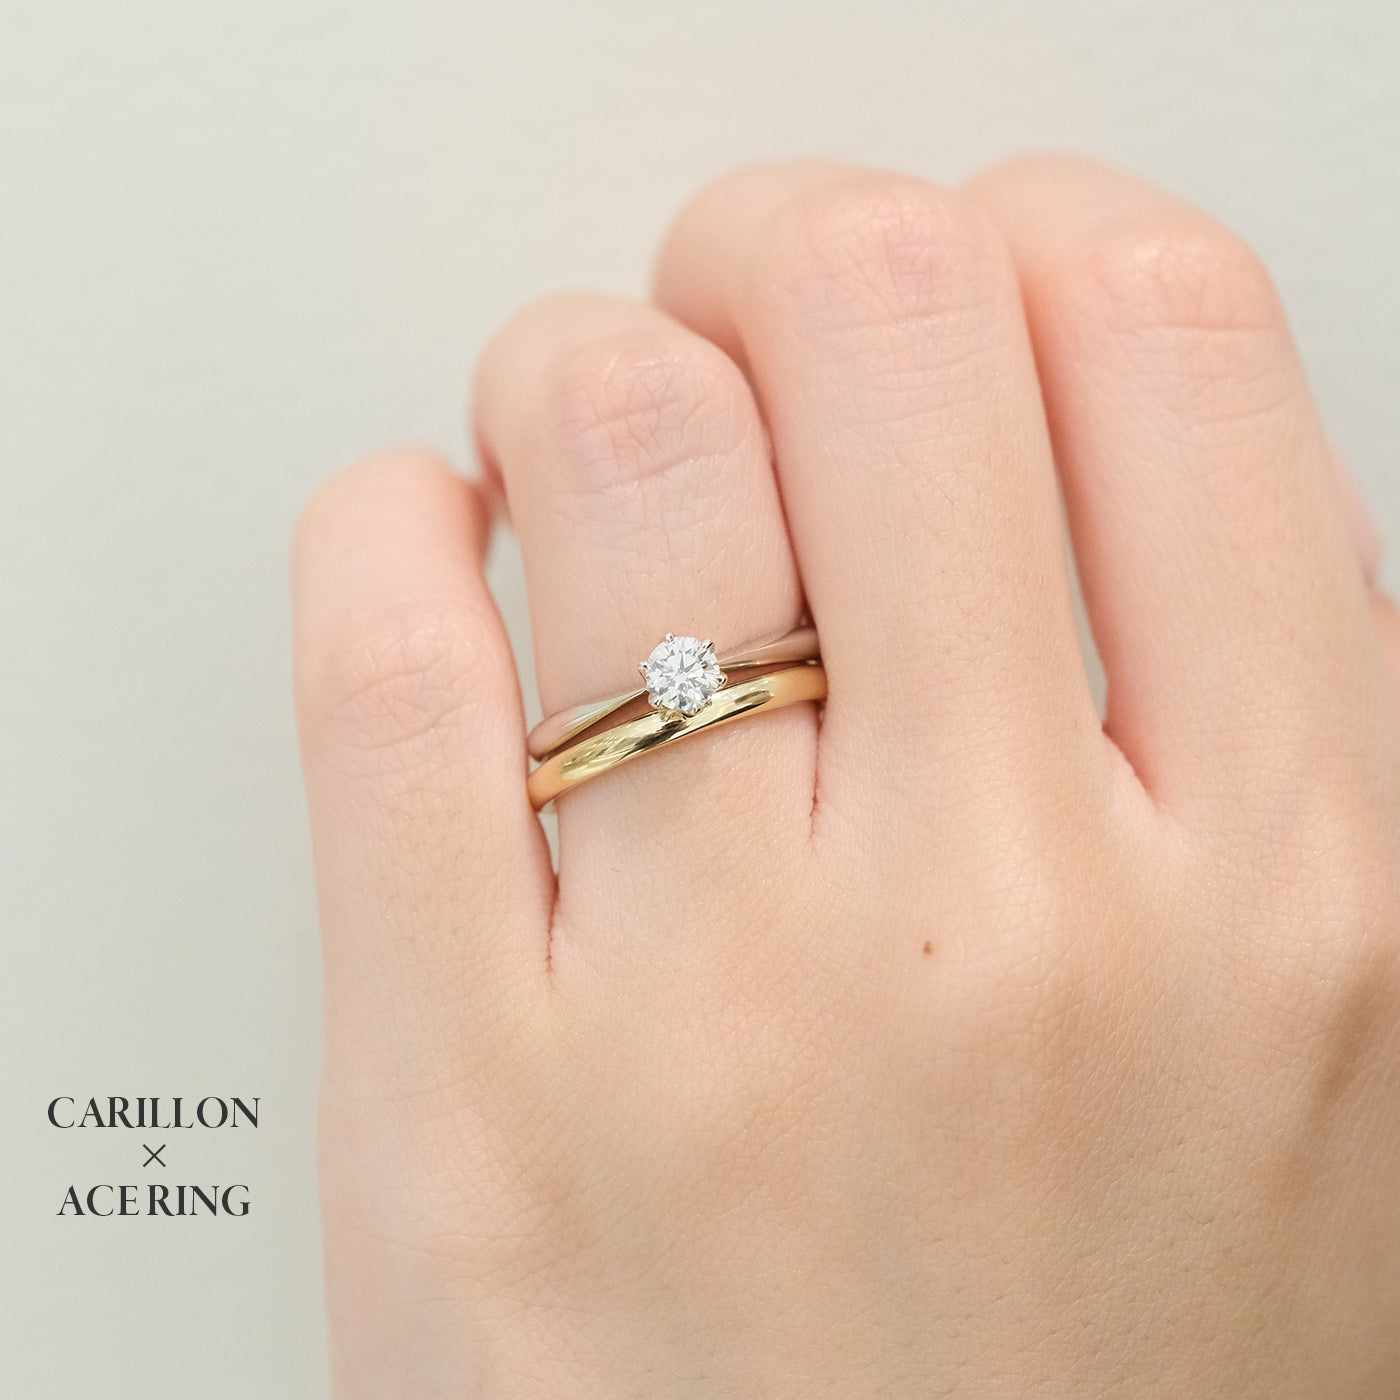 ラザールダイヤモンド 婚約指輪 カリヨン 着用画像